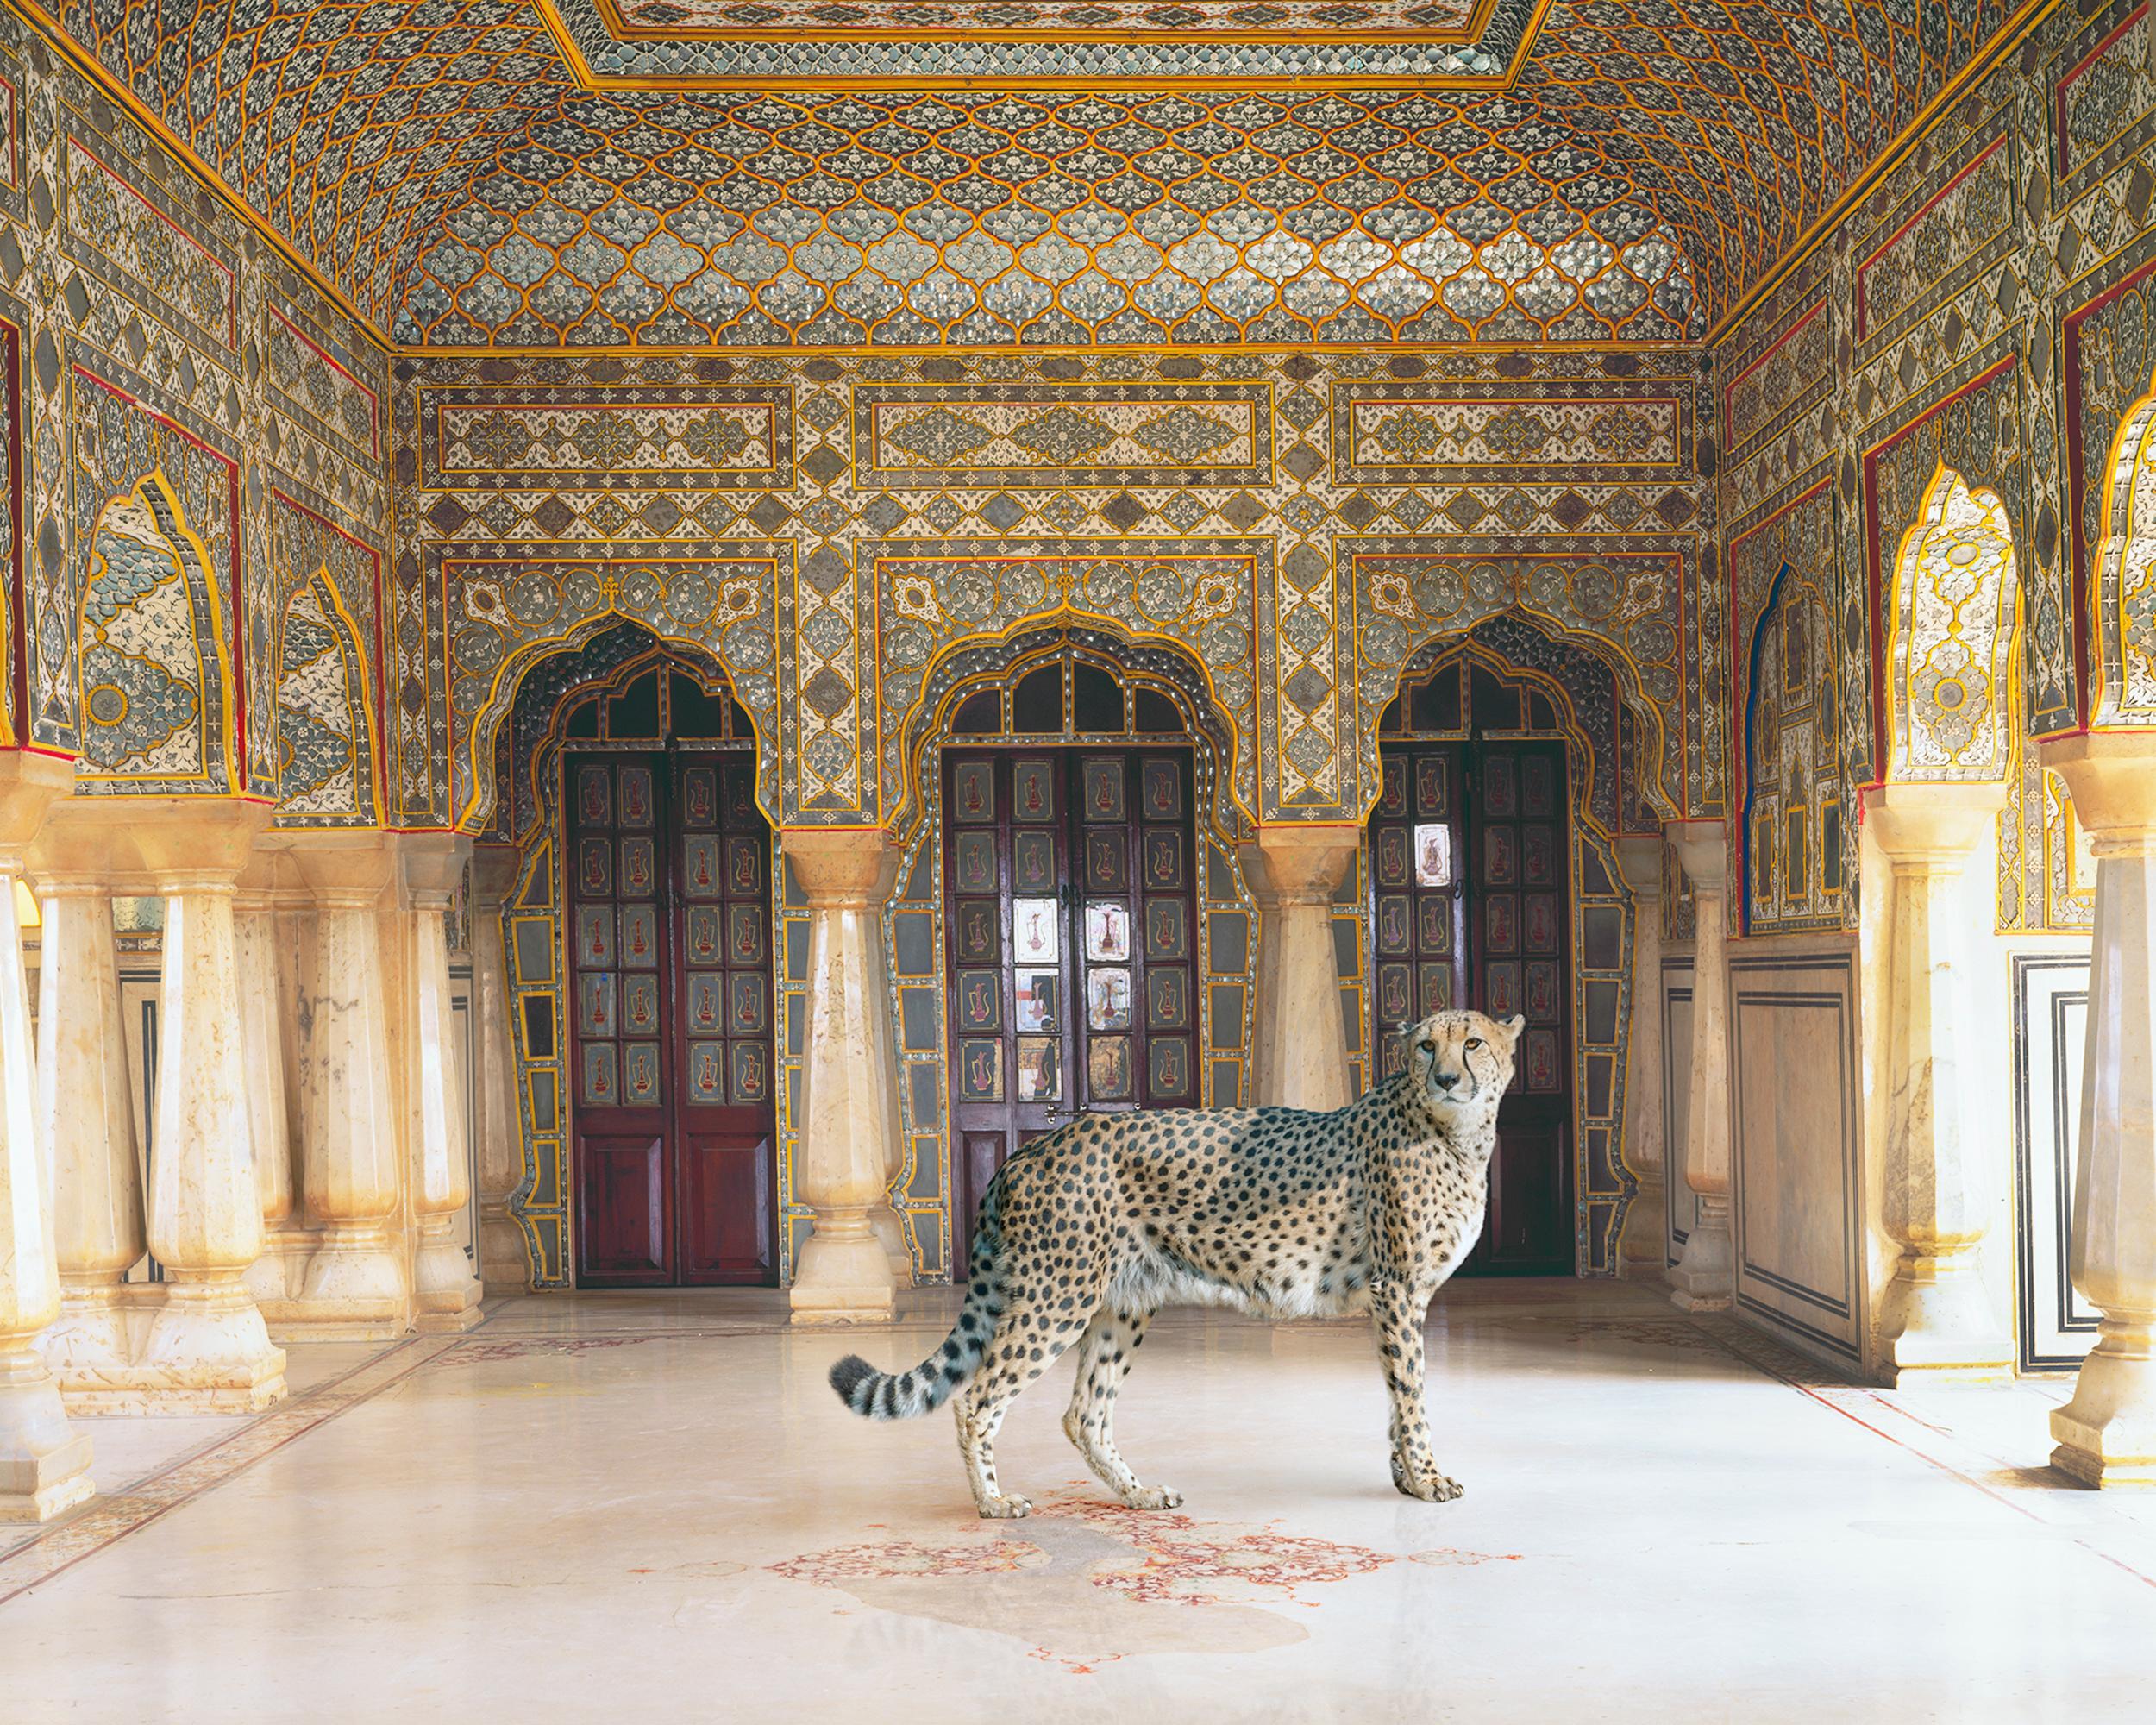 Le retour du chasseur, Chandra Mahal, Jaipur, 2012